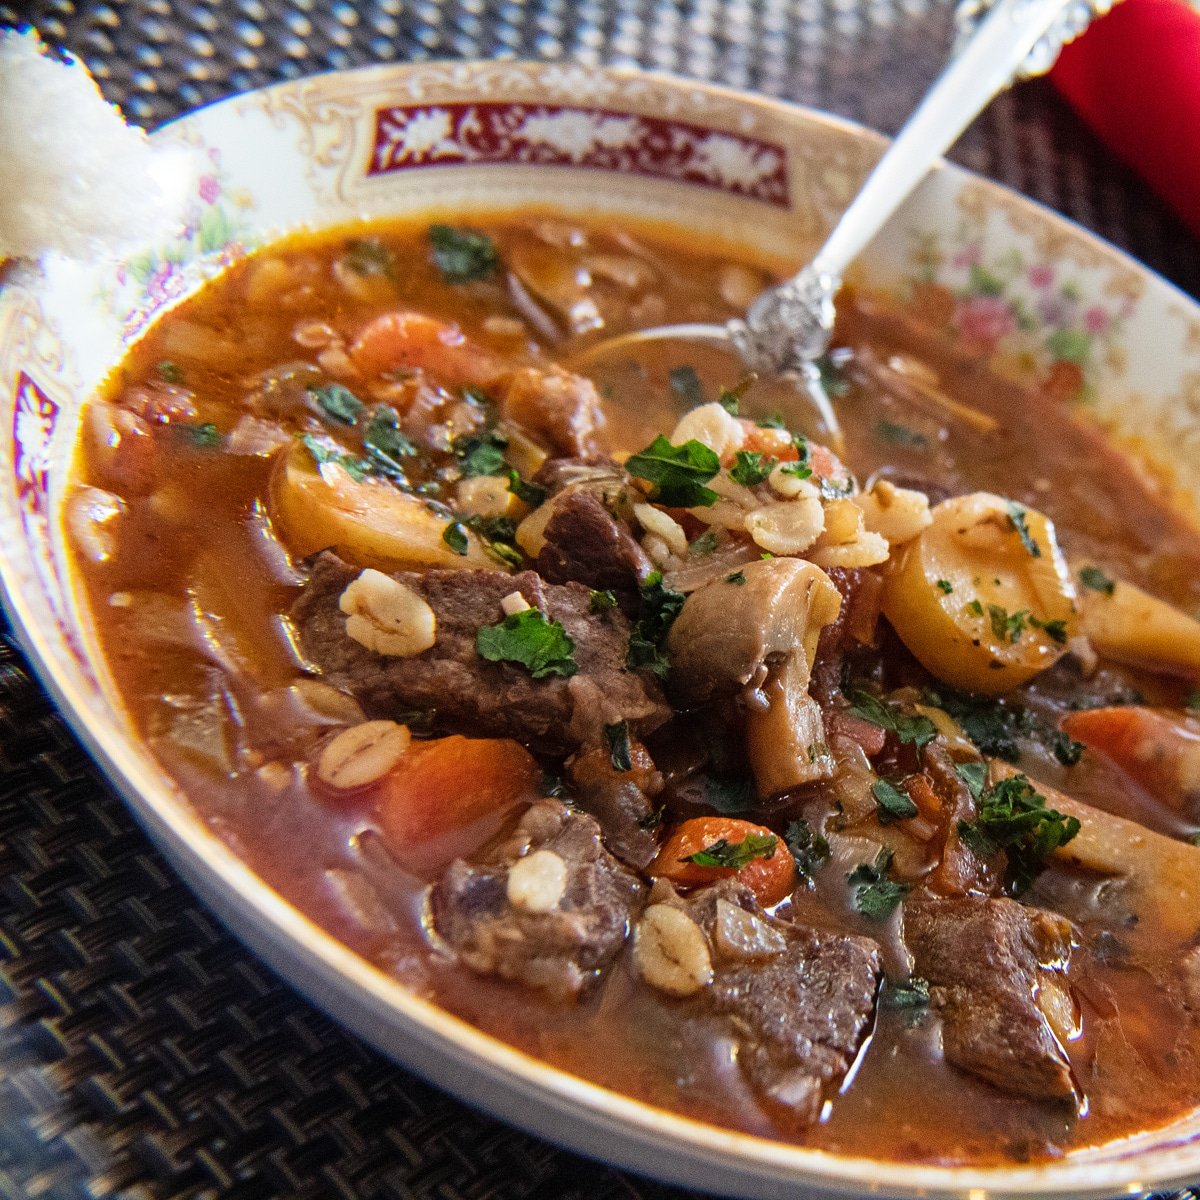 Sisa daging iga utama dan sup barley disajikan dalam mangkuk liburan.